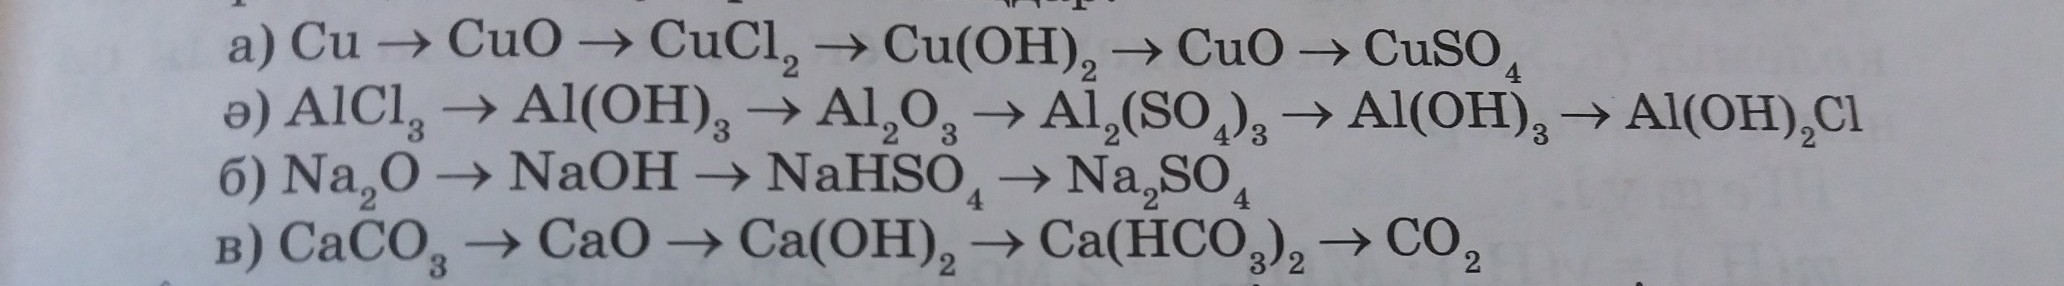 Al alcl3 aloh3 al2so43. Al(Oh)3- al2o3 al CL 3. Alcl3 al Oh 3. Реакция al(Oh)3=al2o3. Al Oh 2 alcl3.